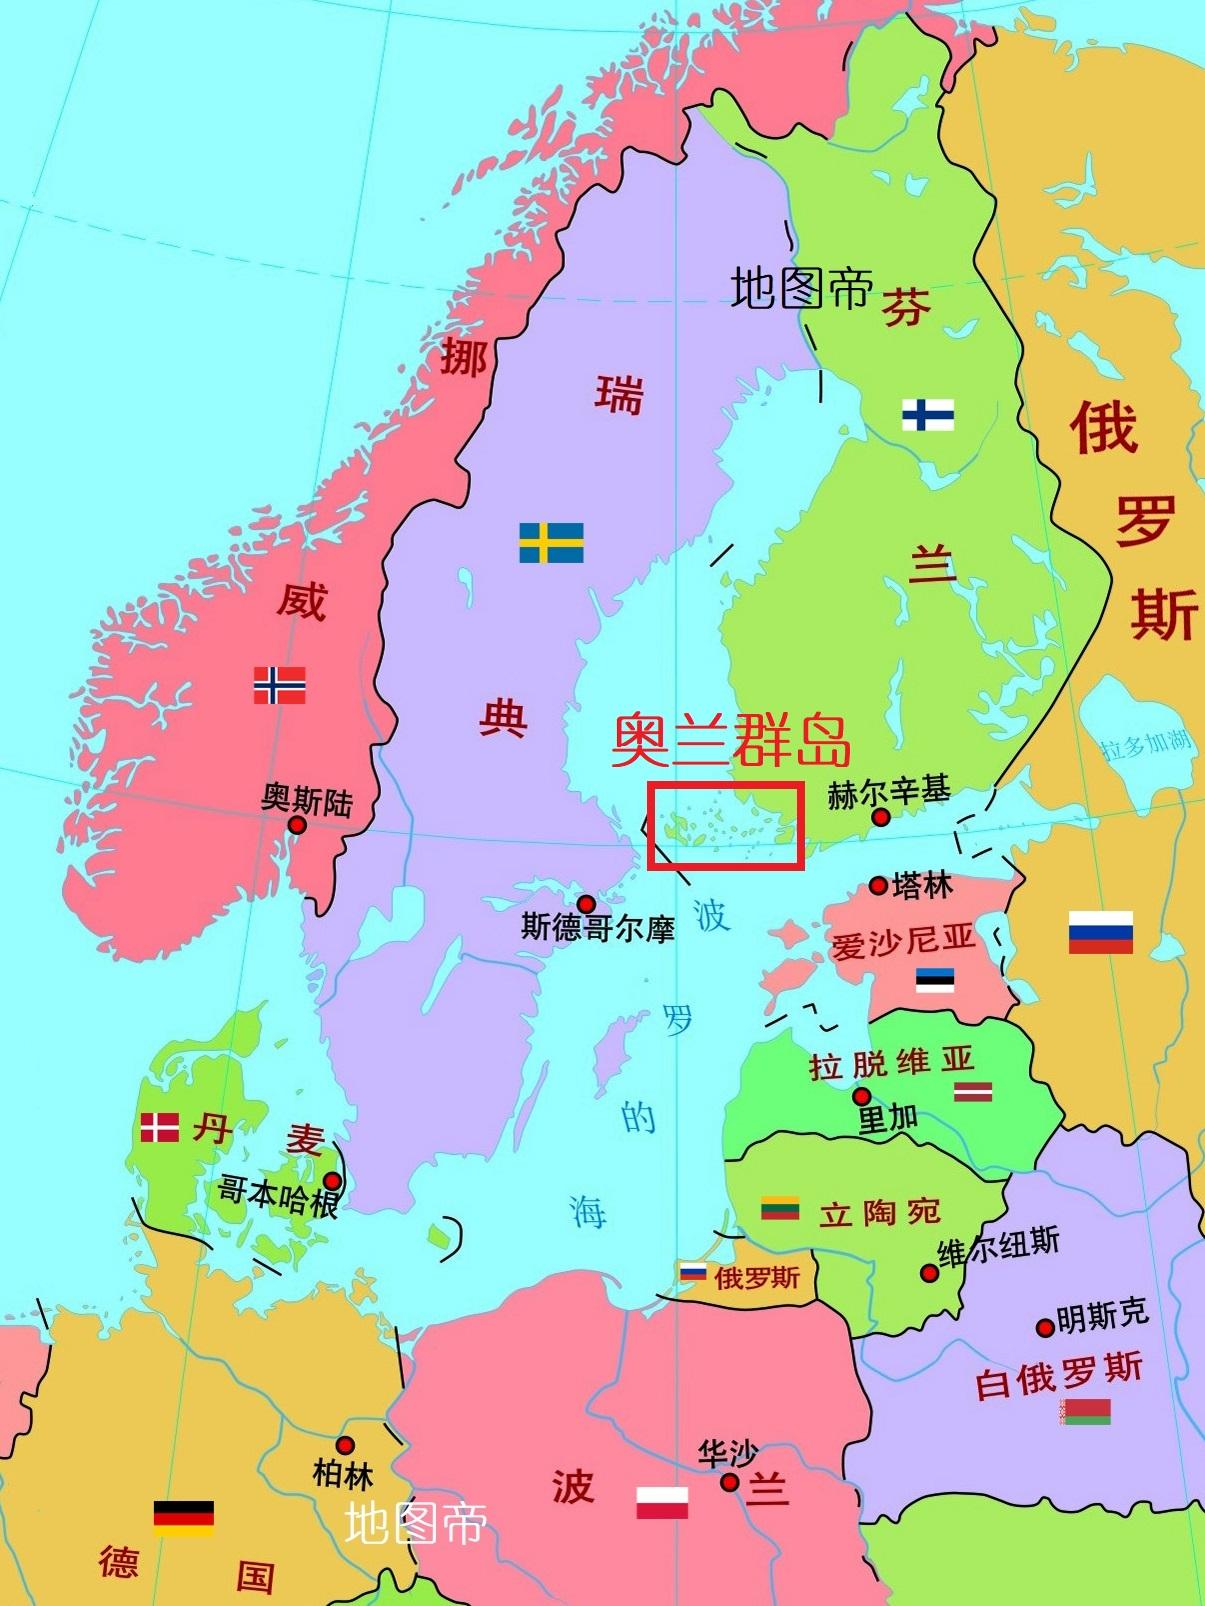 苏联与芬兰是如何争夺芬兰湾的?